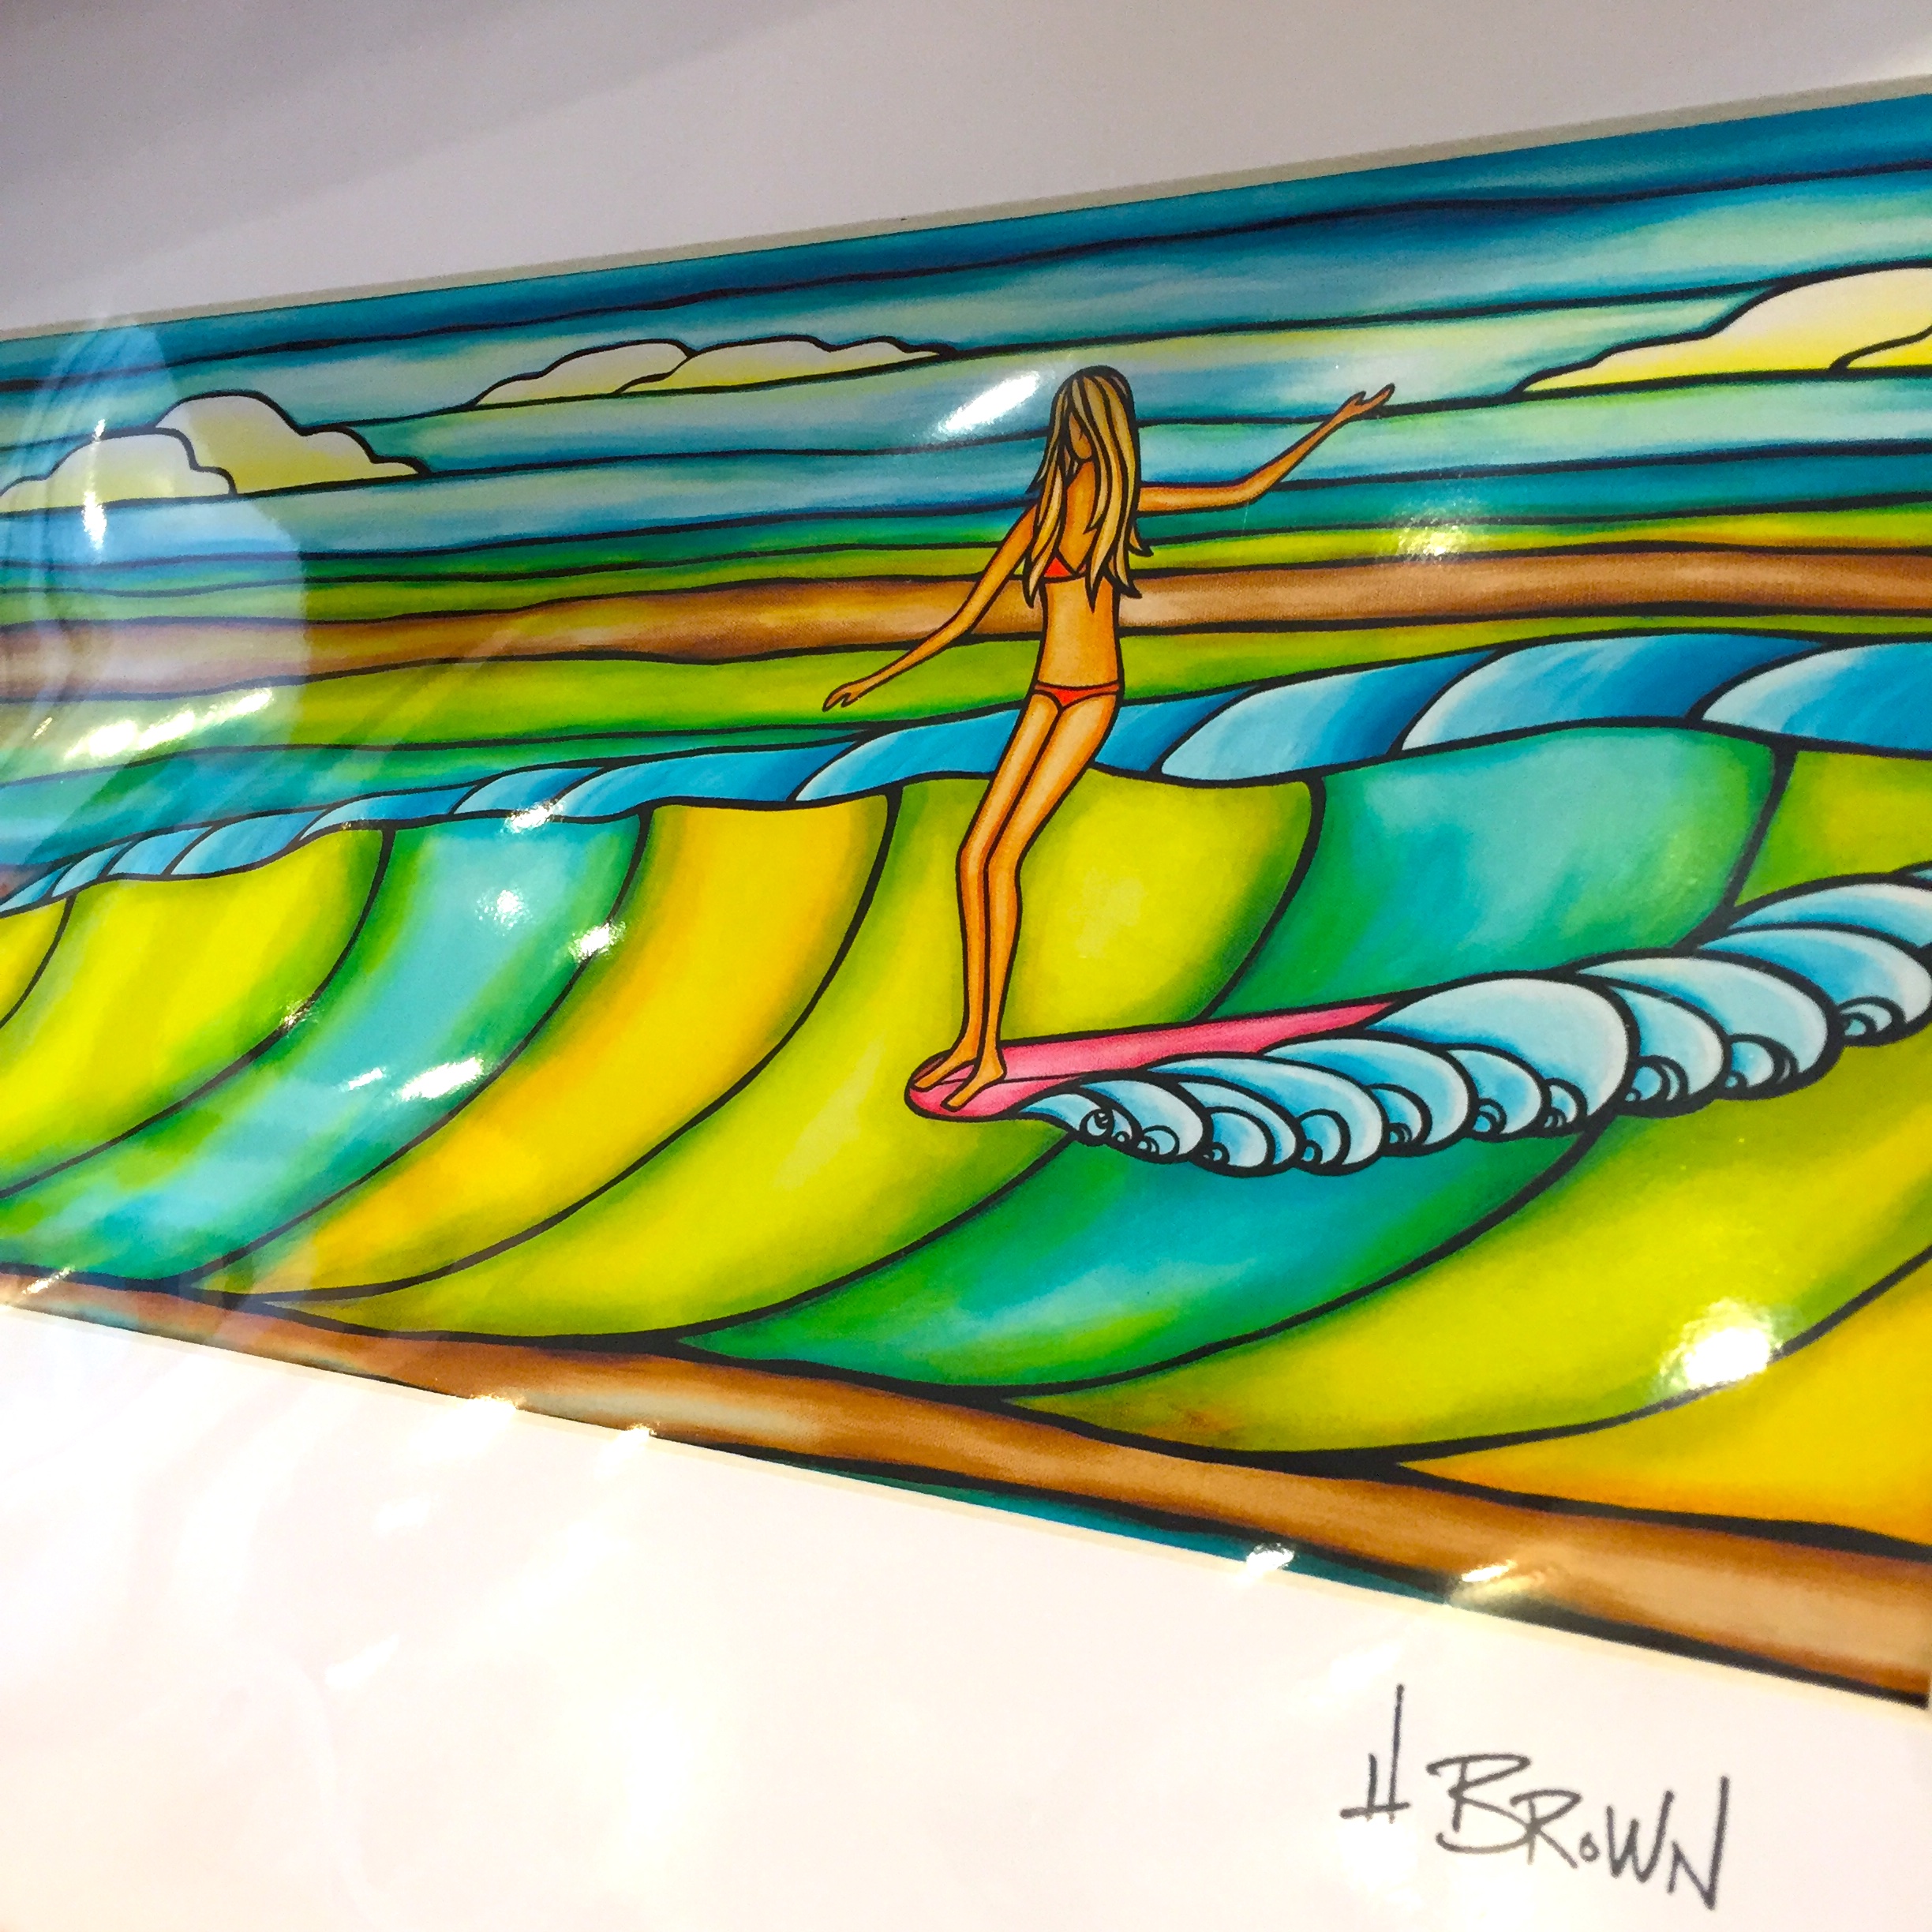 ヘザー・ブラウンアート オーストラリア店 | AWSM SURF/オーサムサーフ ...